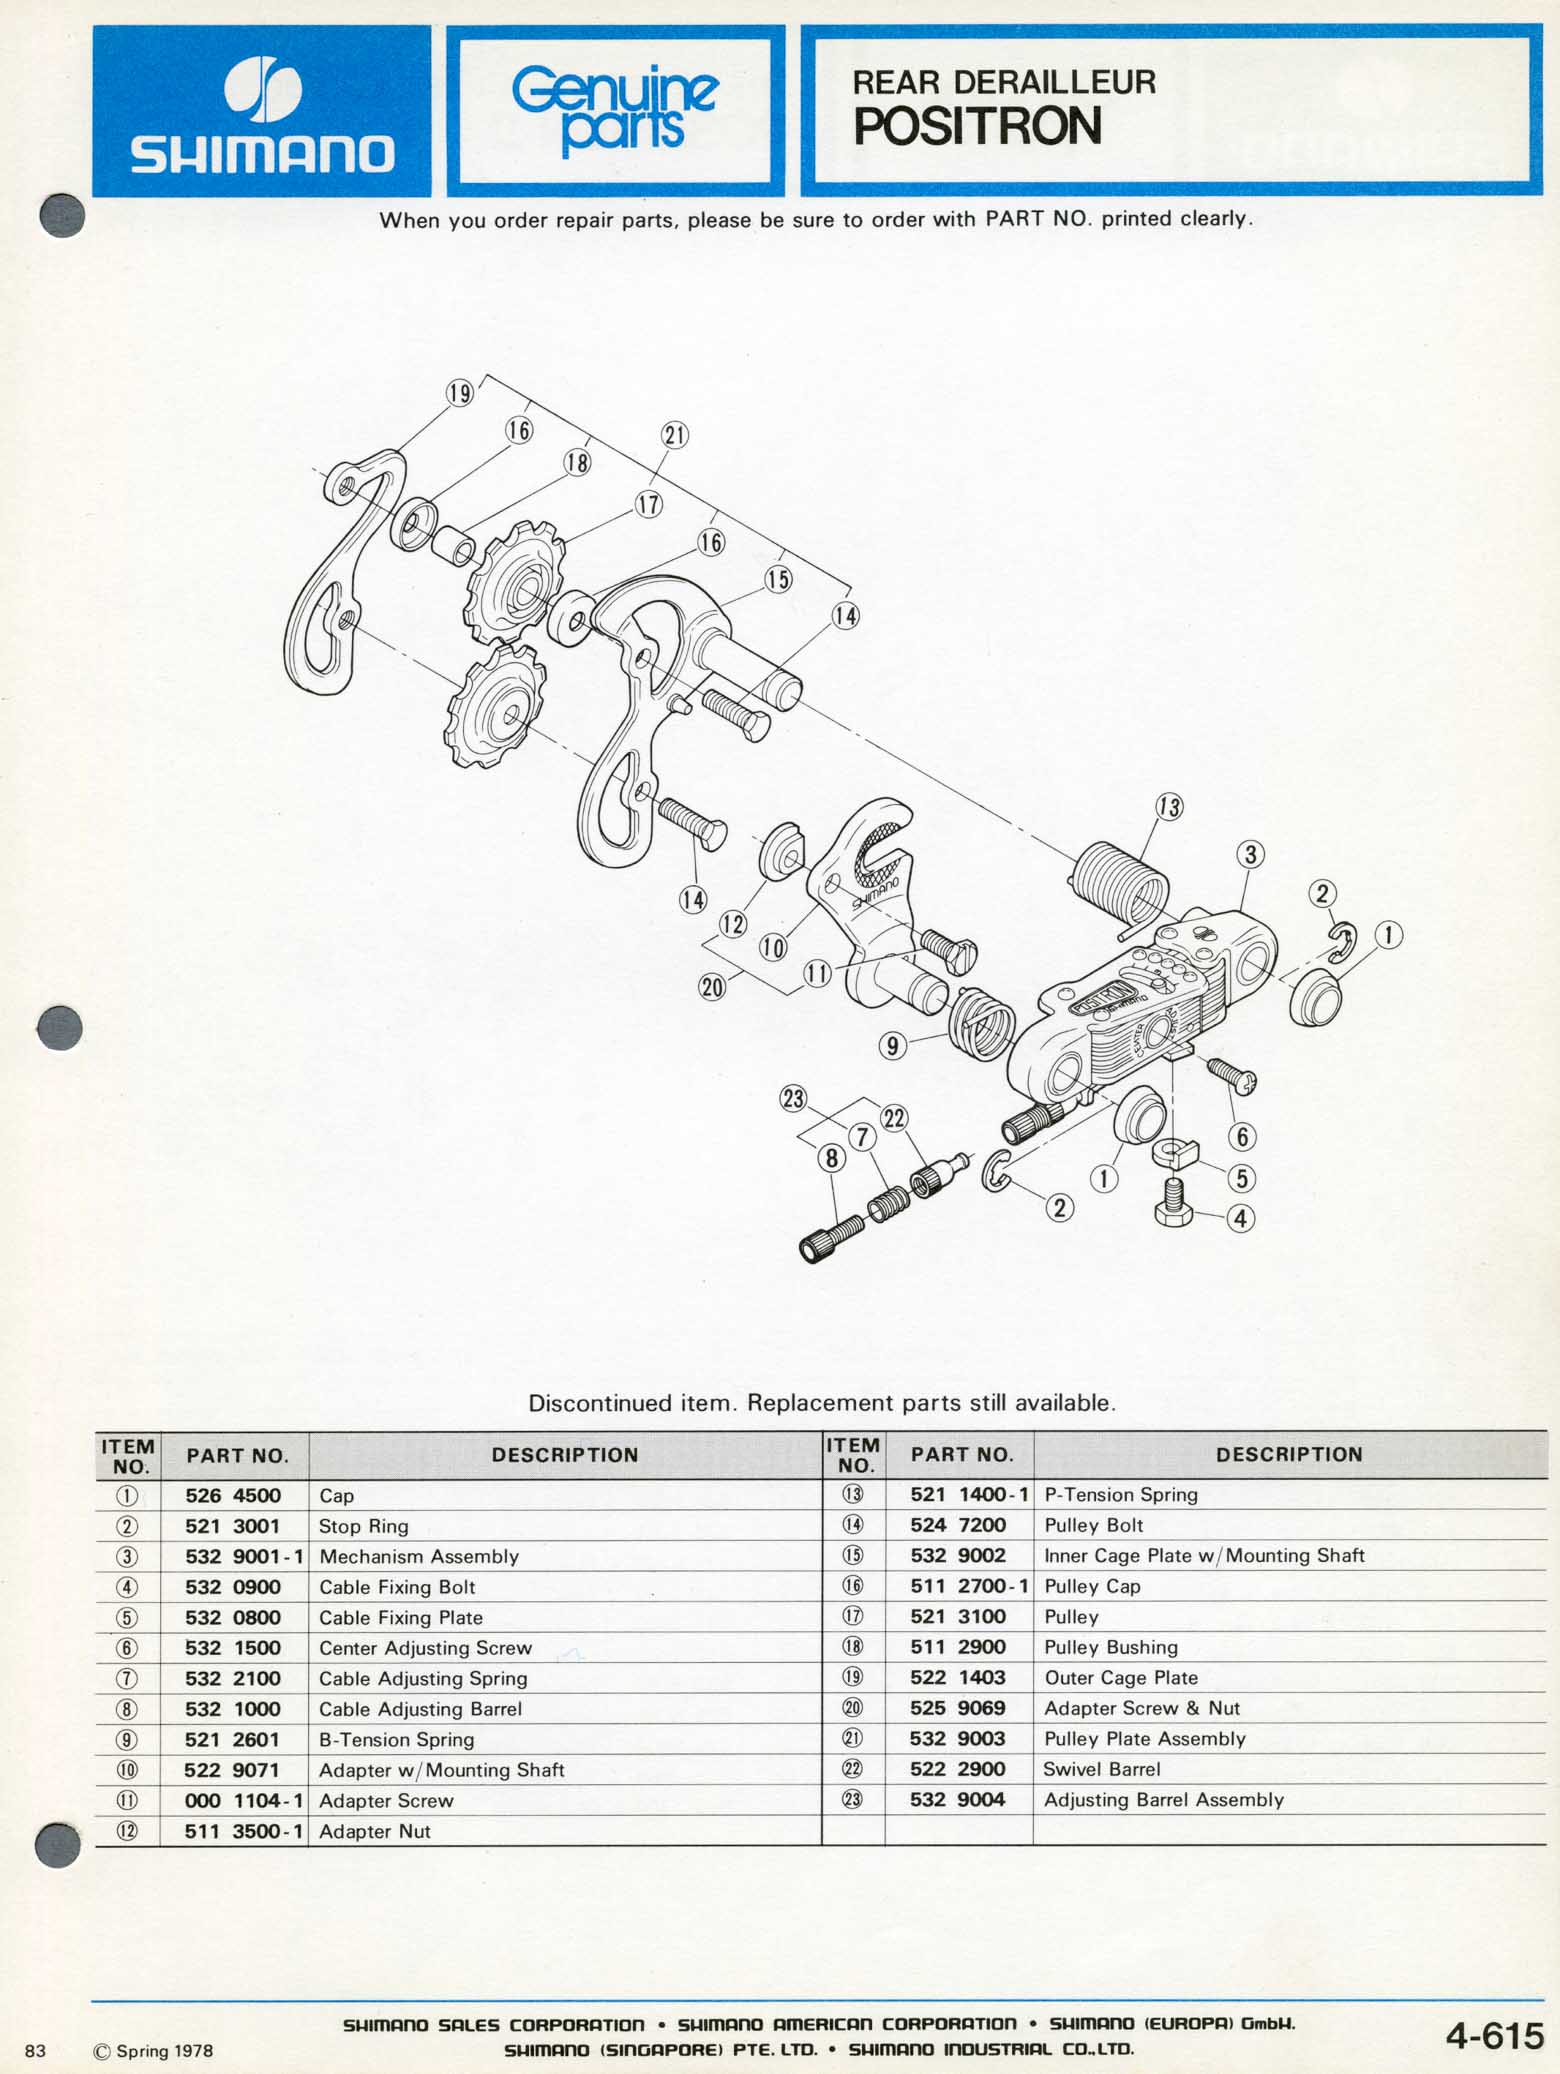 Shimano Bicycle Parts - 1978 scan 26 main image